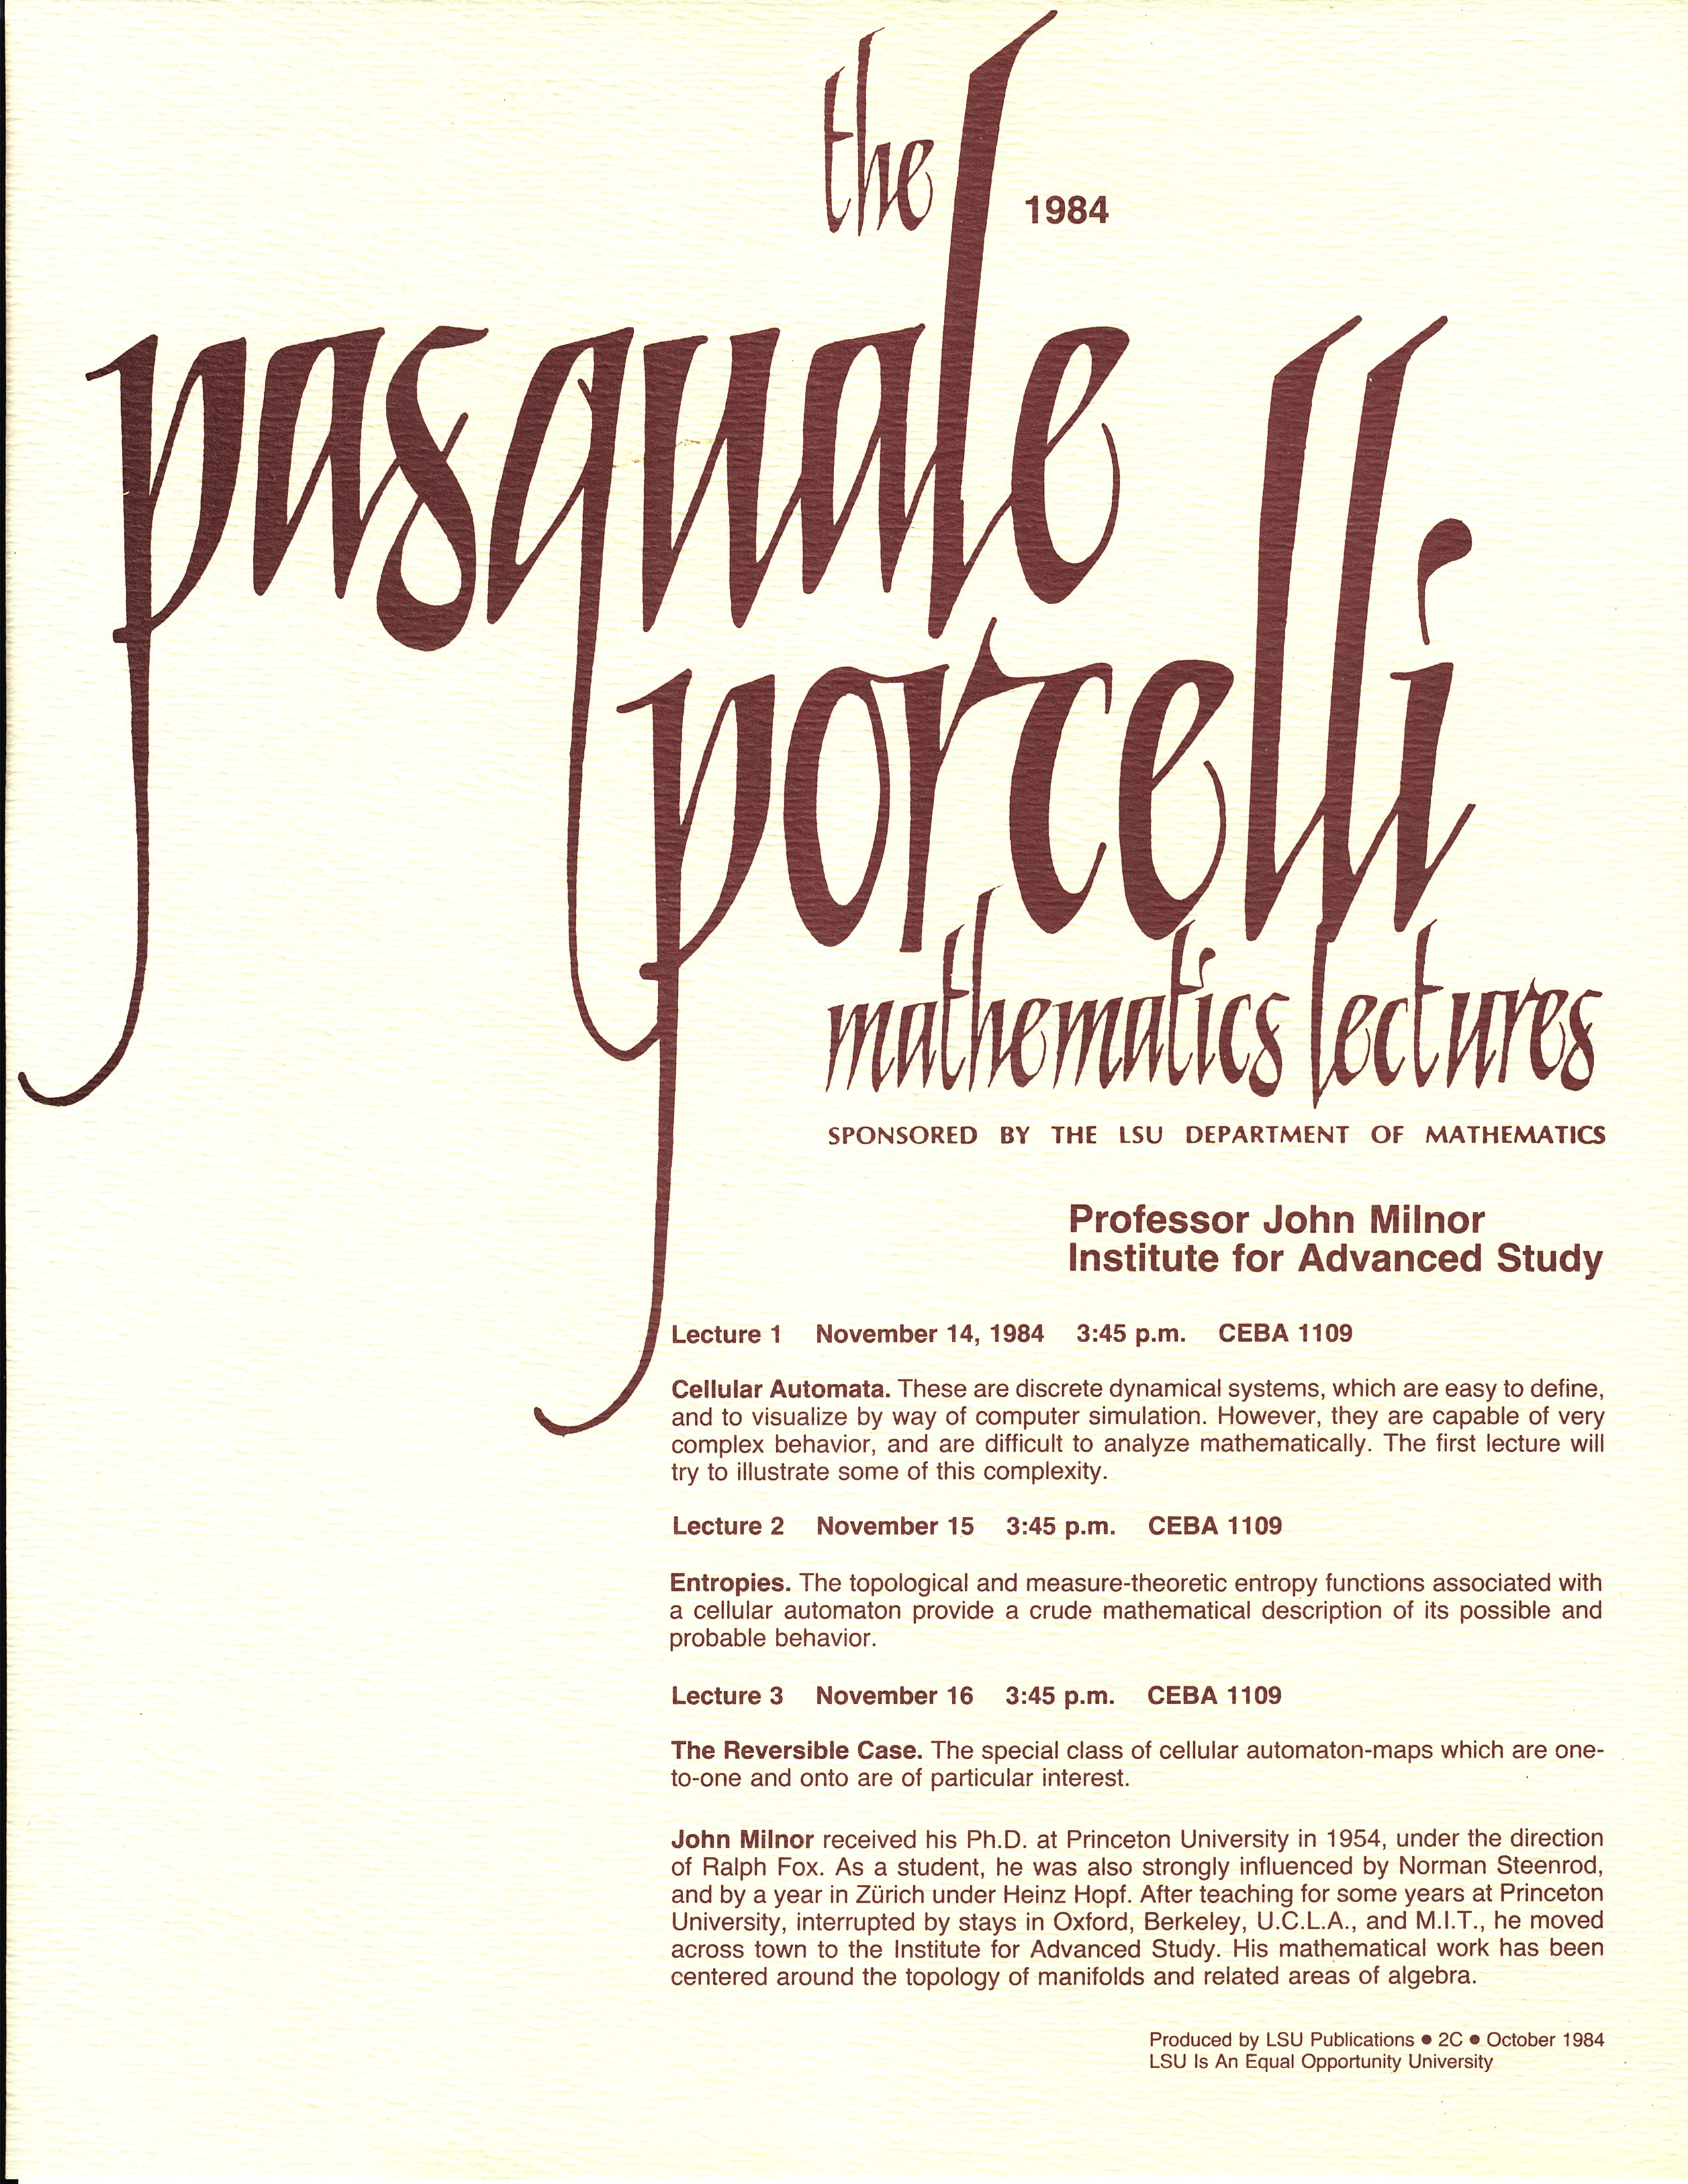 Porcelli Lecture Invitation: John Milnor 1984